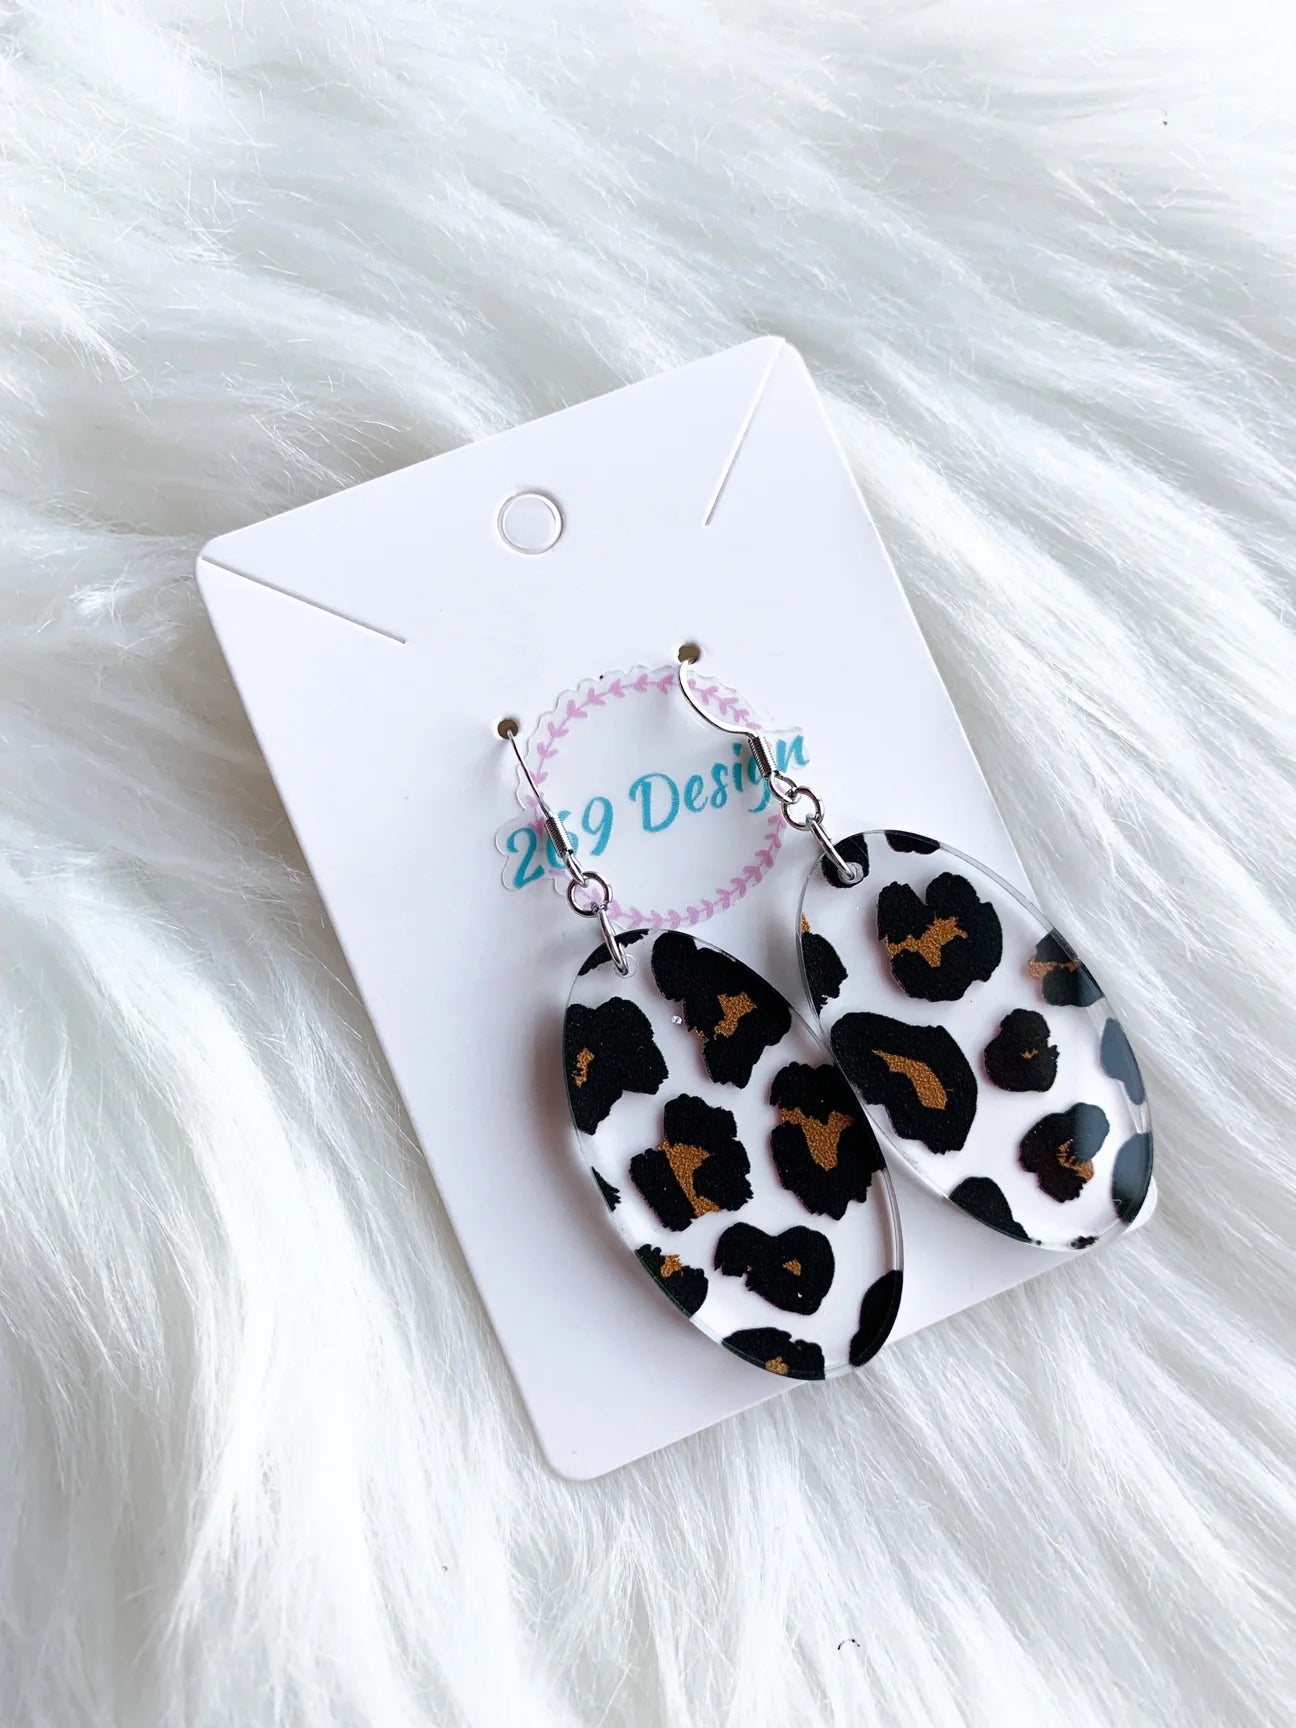 Leopard Print Dangle Earrings